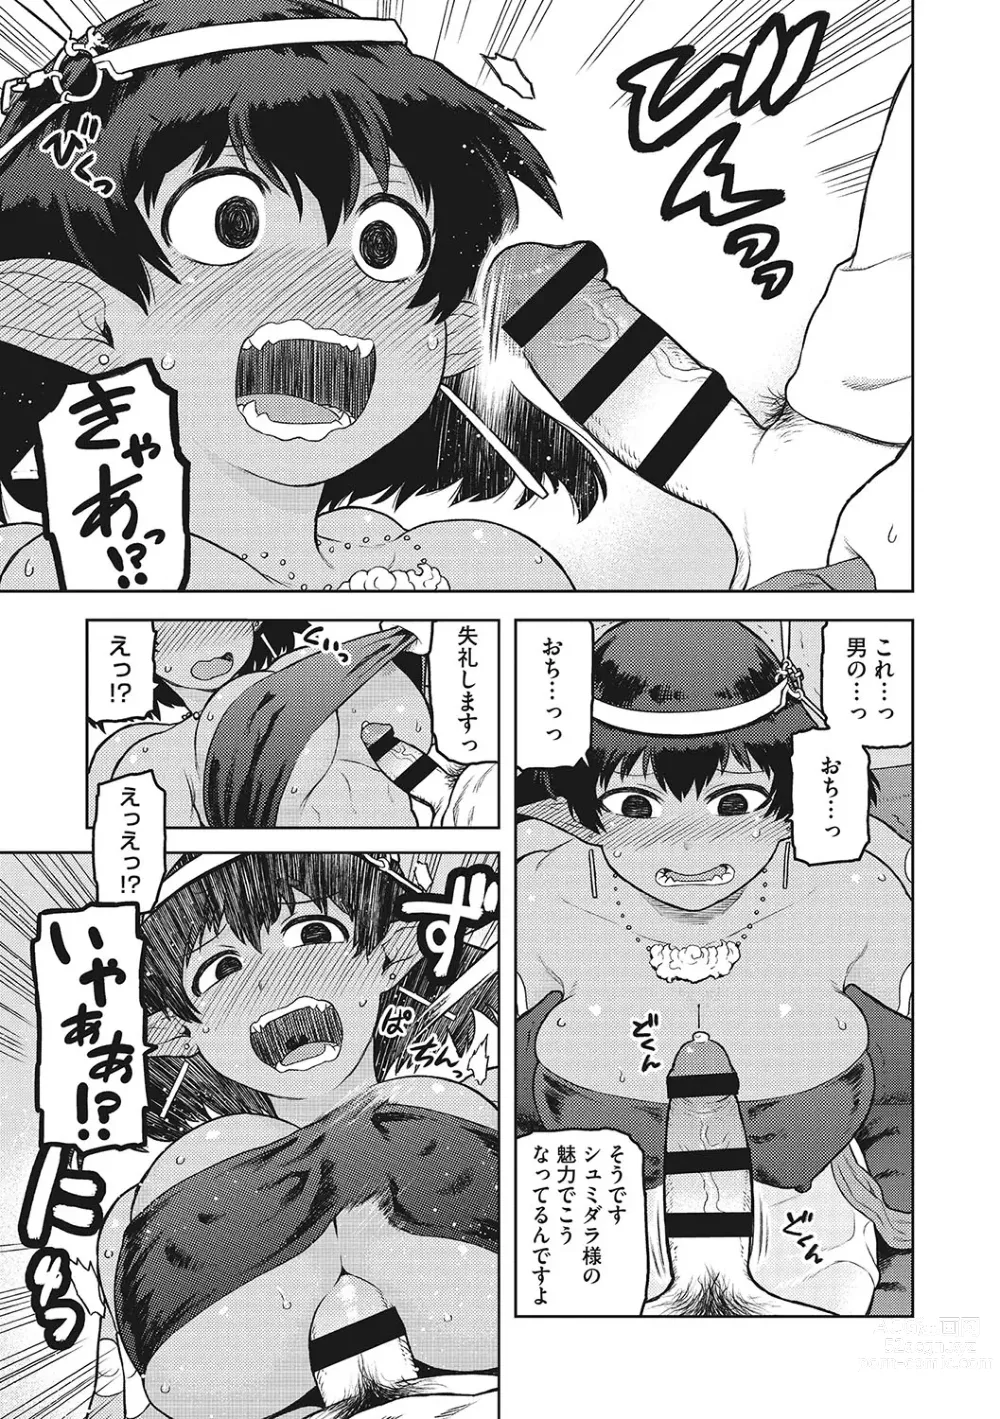 Page 12 of manga I.SyuWa.Karn Alph Lyla